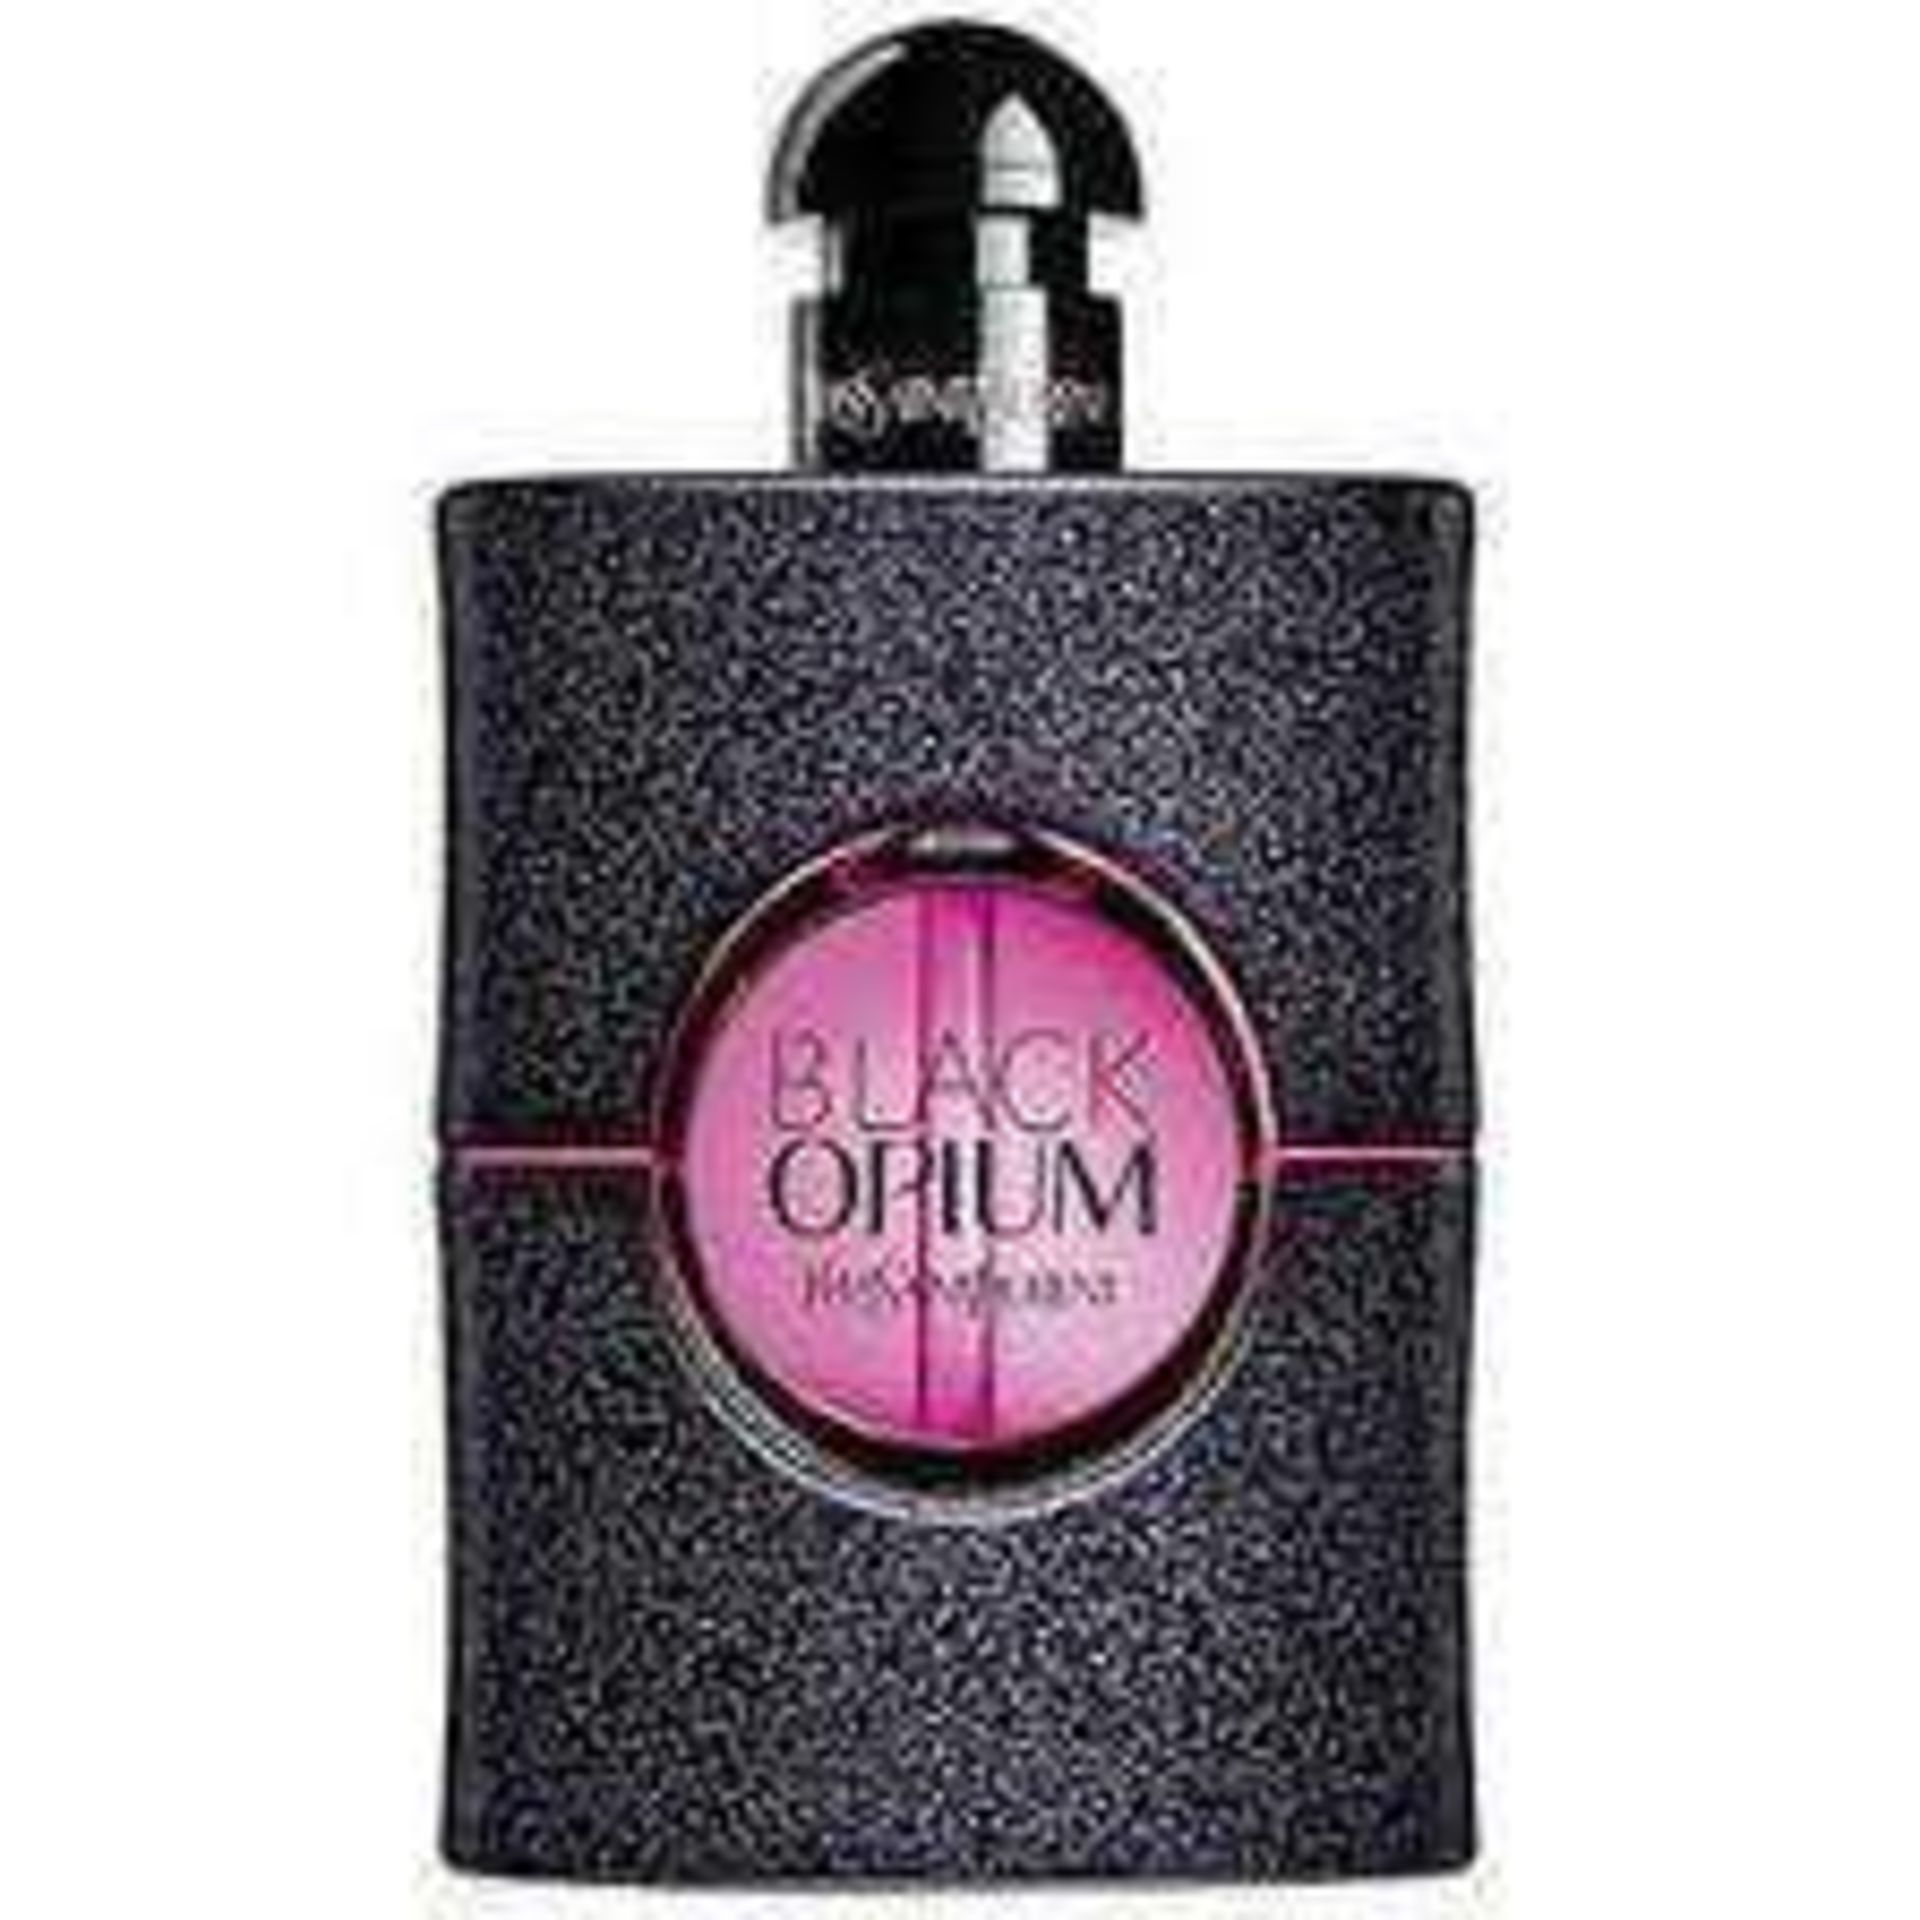 RRP £85 Unboxed Yves Saint Laurent Black Opium Neon Perfume 75Ml Ex Display - Image 2 of 2